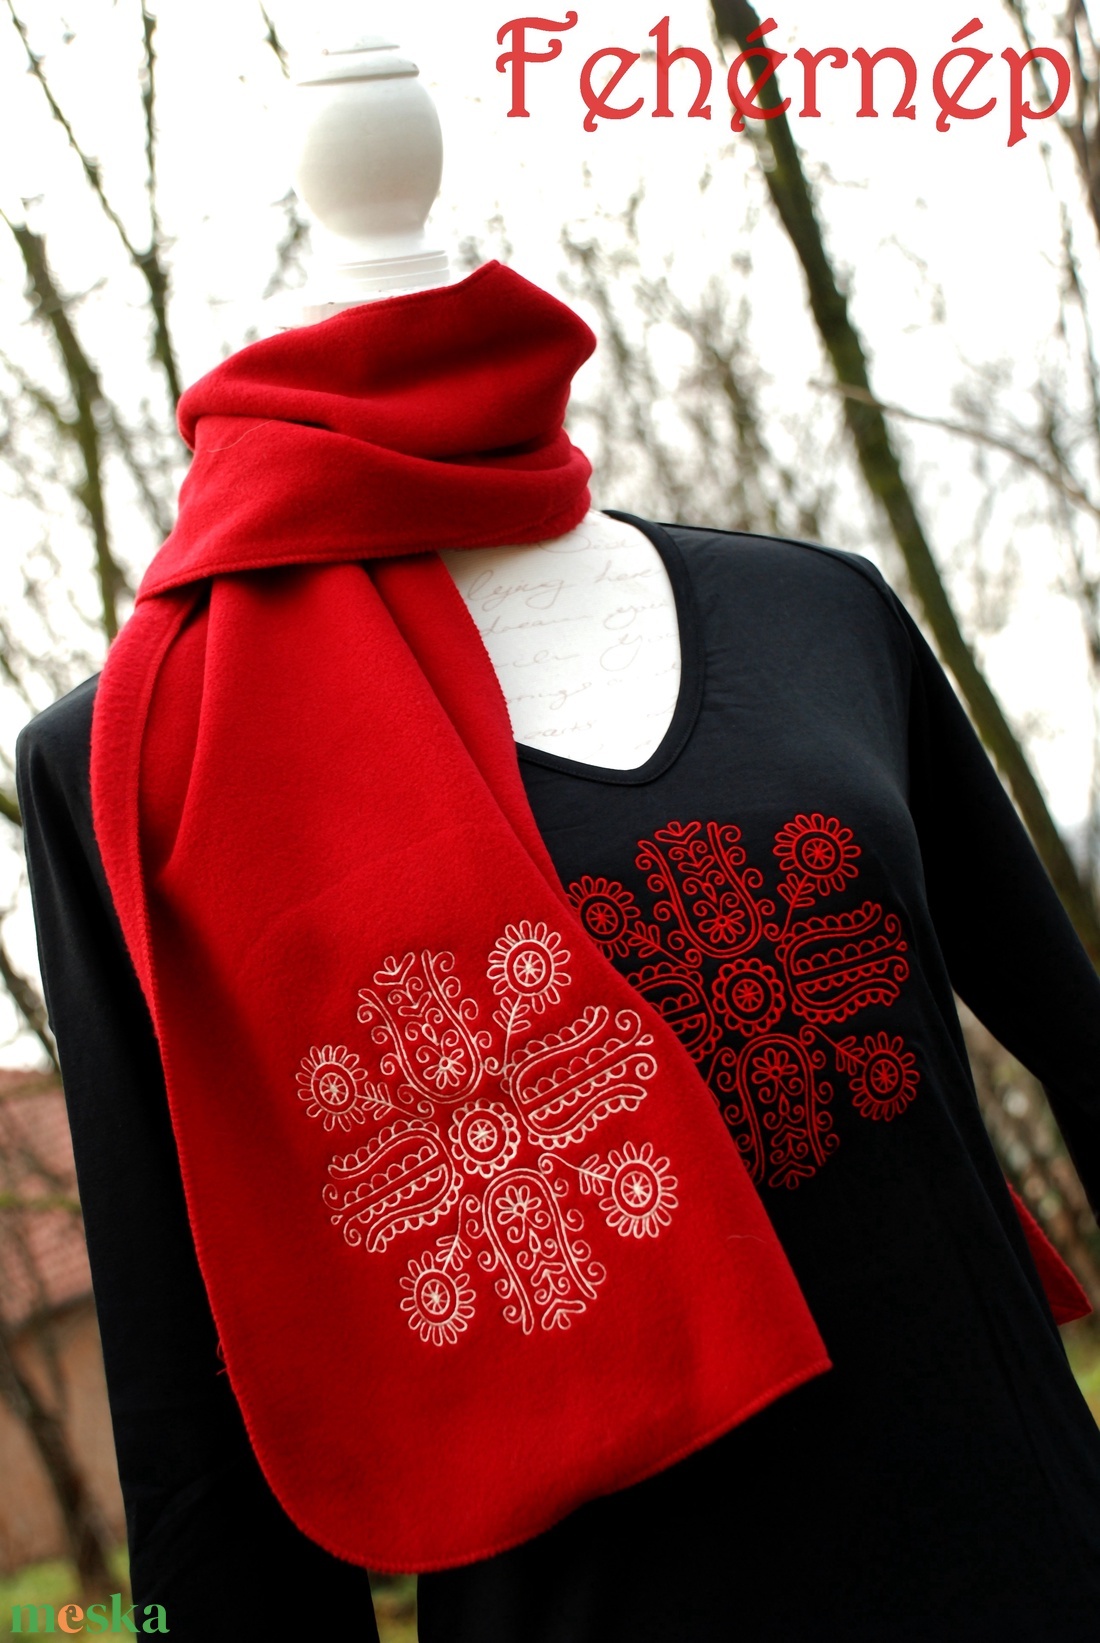 Fehérnép vörös téli sál, kőrösfői - ruha & divat - sál, sapka, kendő - sál - Meska.hu